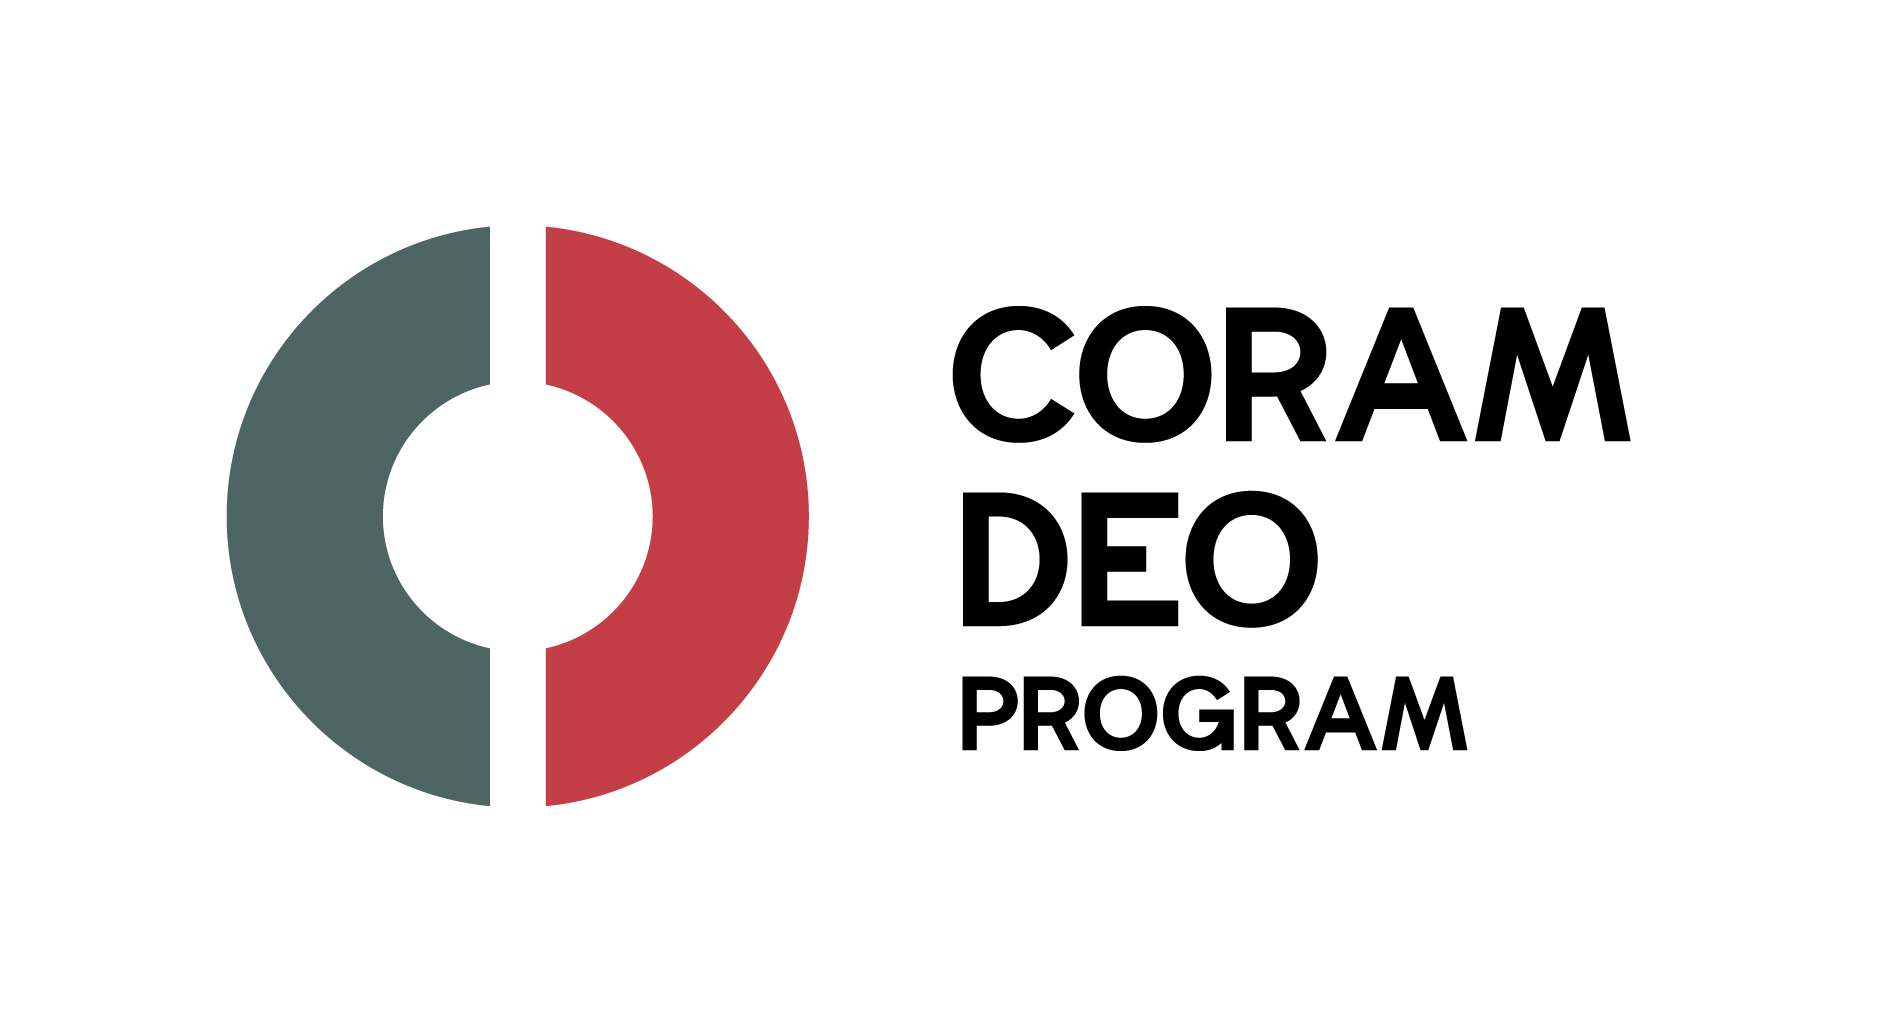 Coram Deo Program Logo